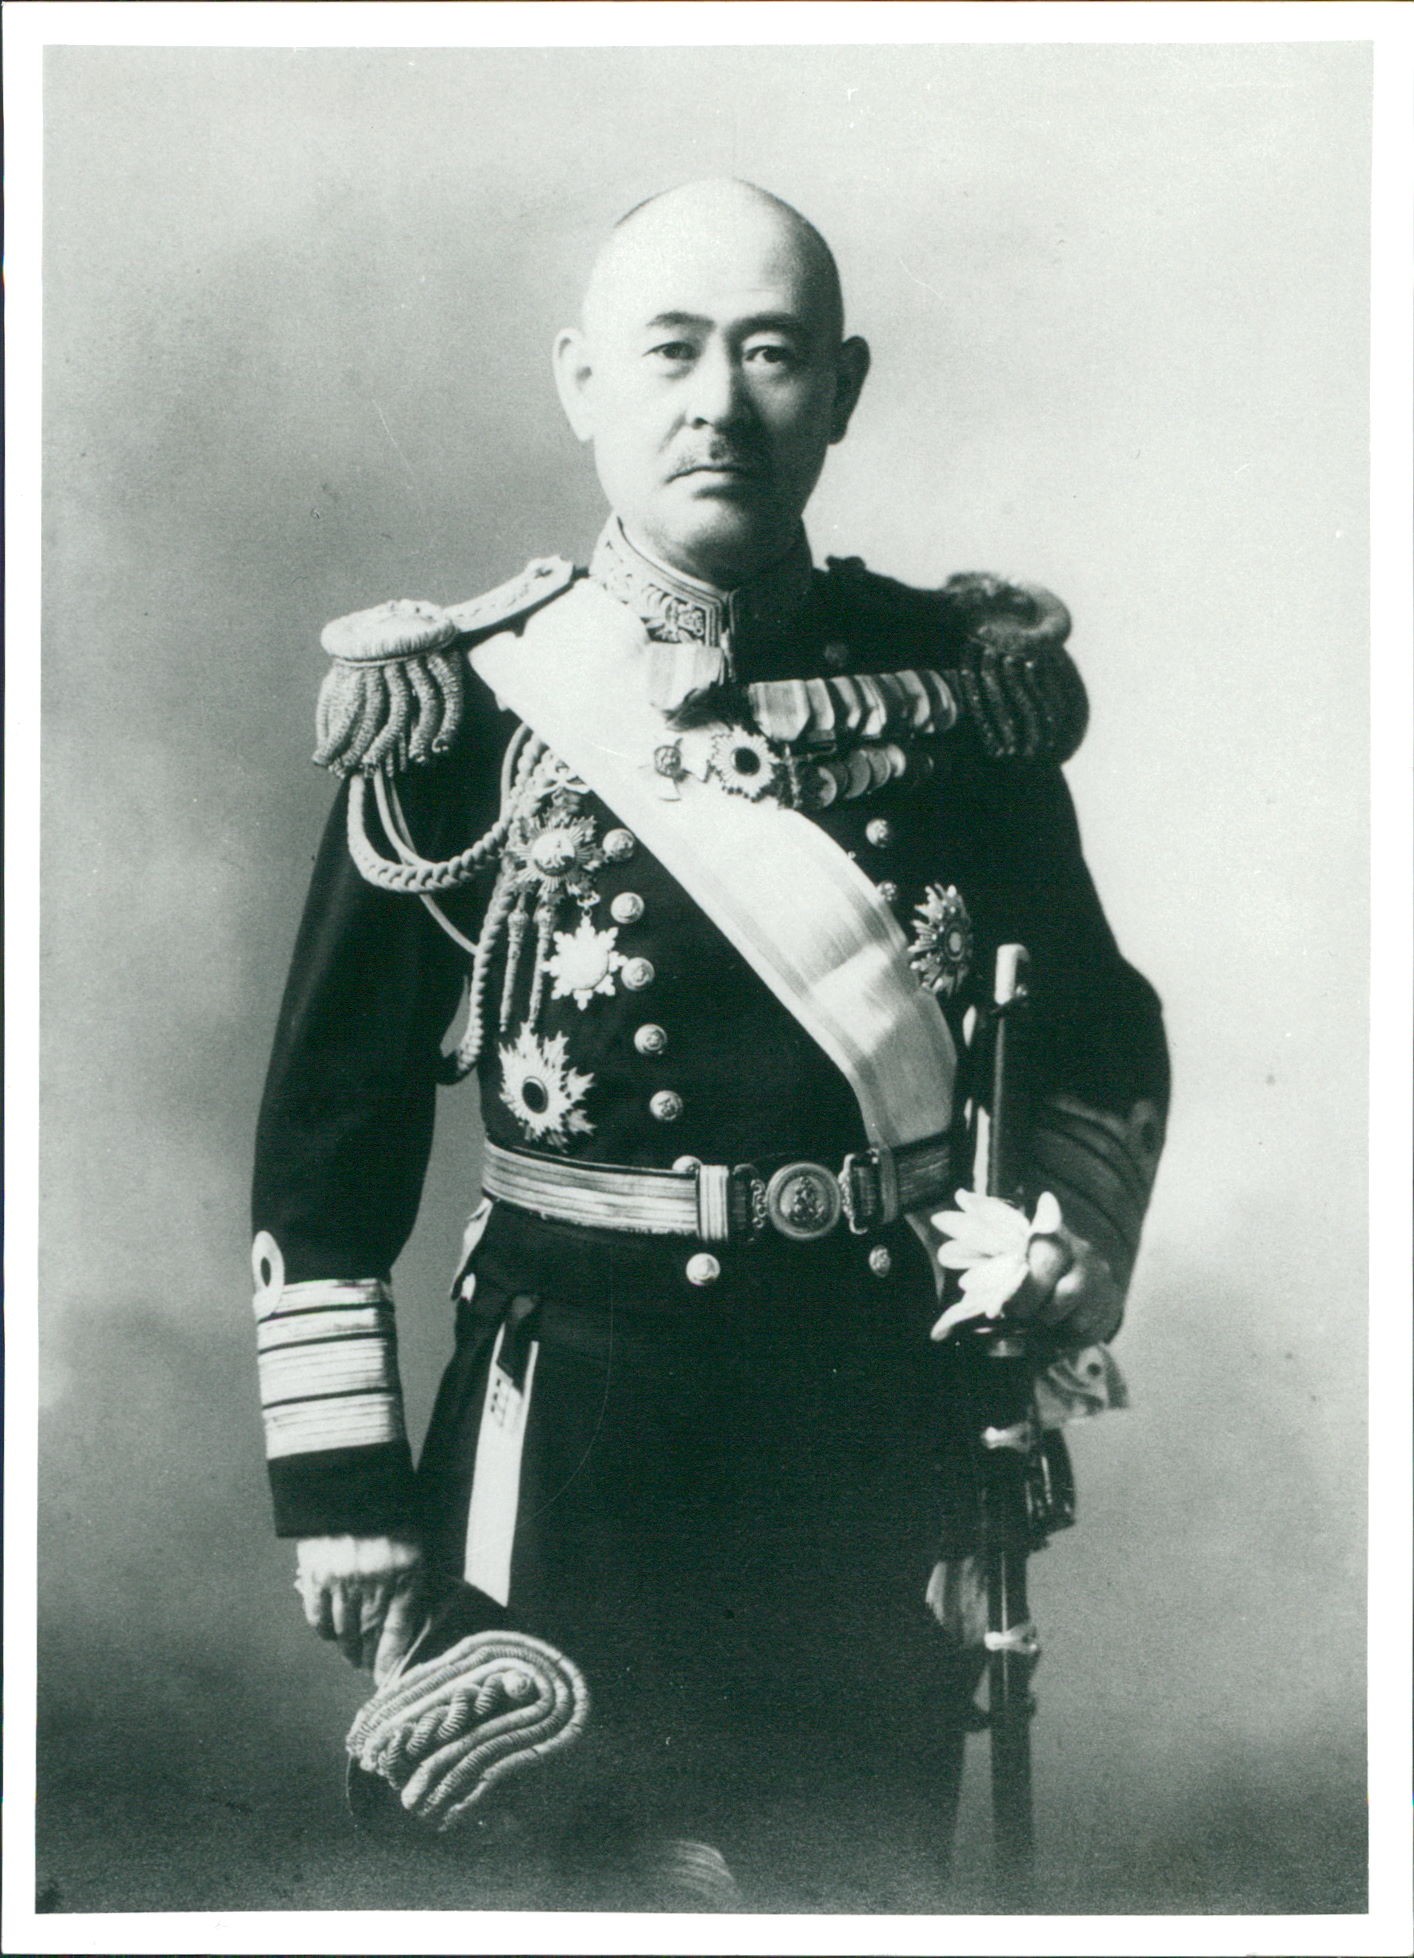 太平洋戦争は最初から昭和天皇 政府 大本営とイルミナティ 欧米大財閥 欧米貴族 によるやらせだった 日本人の人口削減とイルミナティの利権獲得が目的